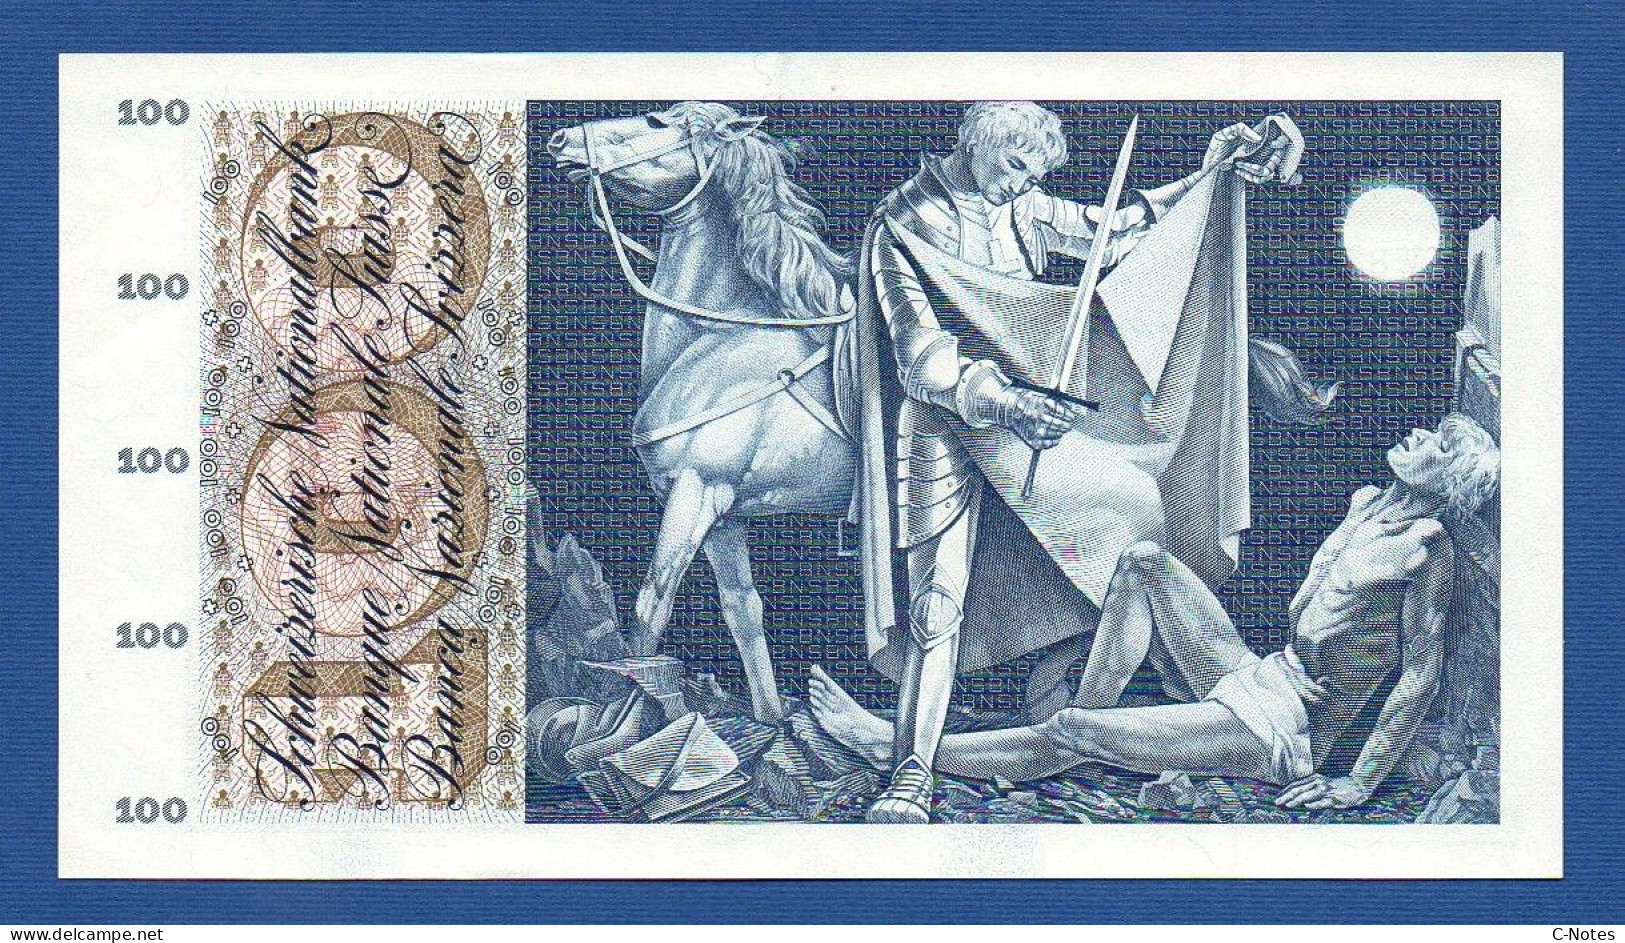 SWITZERLAND - P.49f(1) - 100 Francs 1964 AUNC, Serie 45W83404  -signatures: Brenno Galli / Schwegler / Kunz - Switzerland